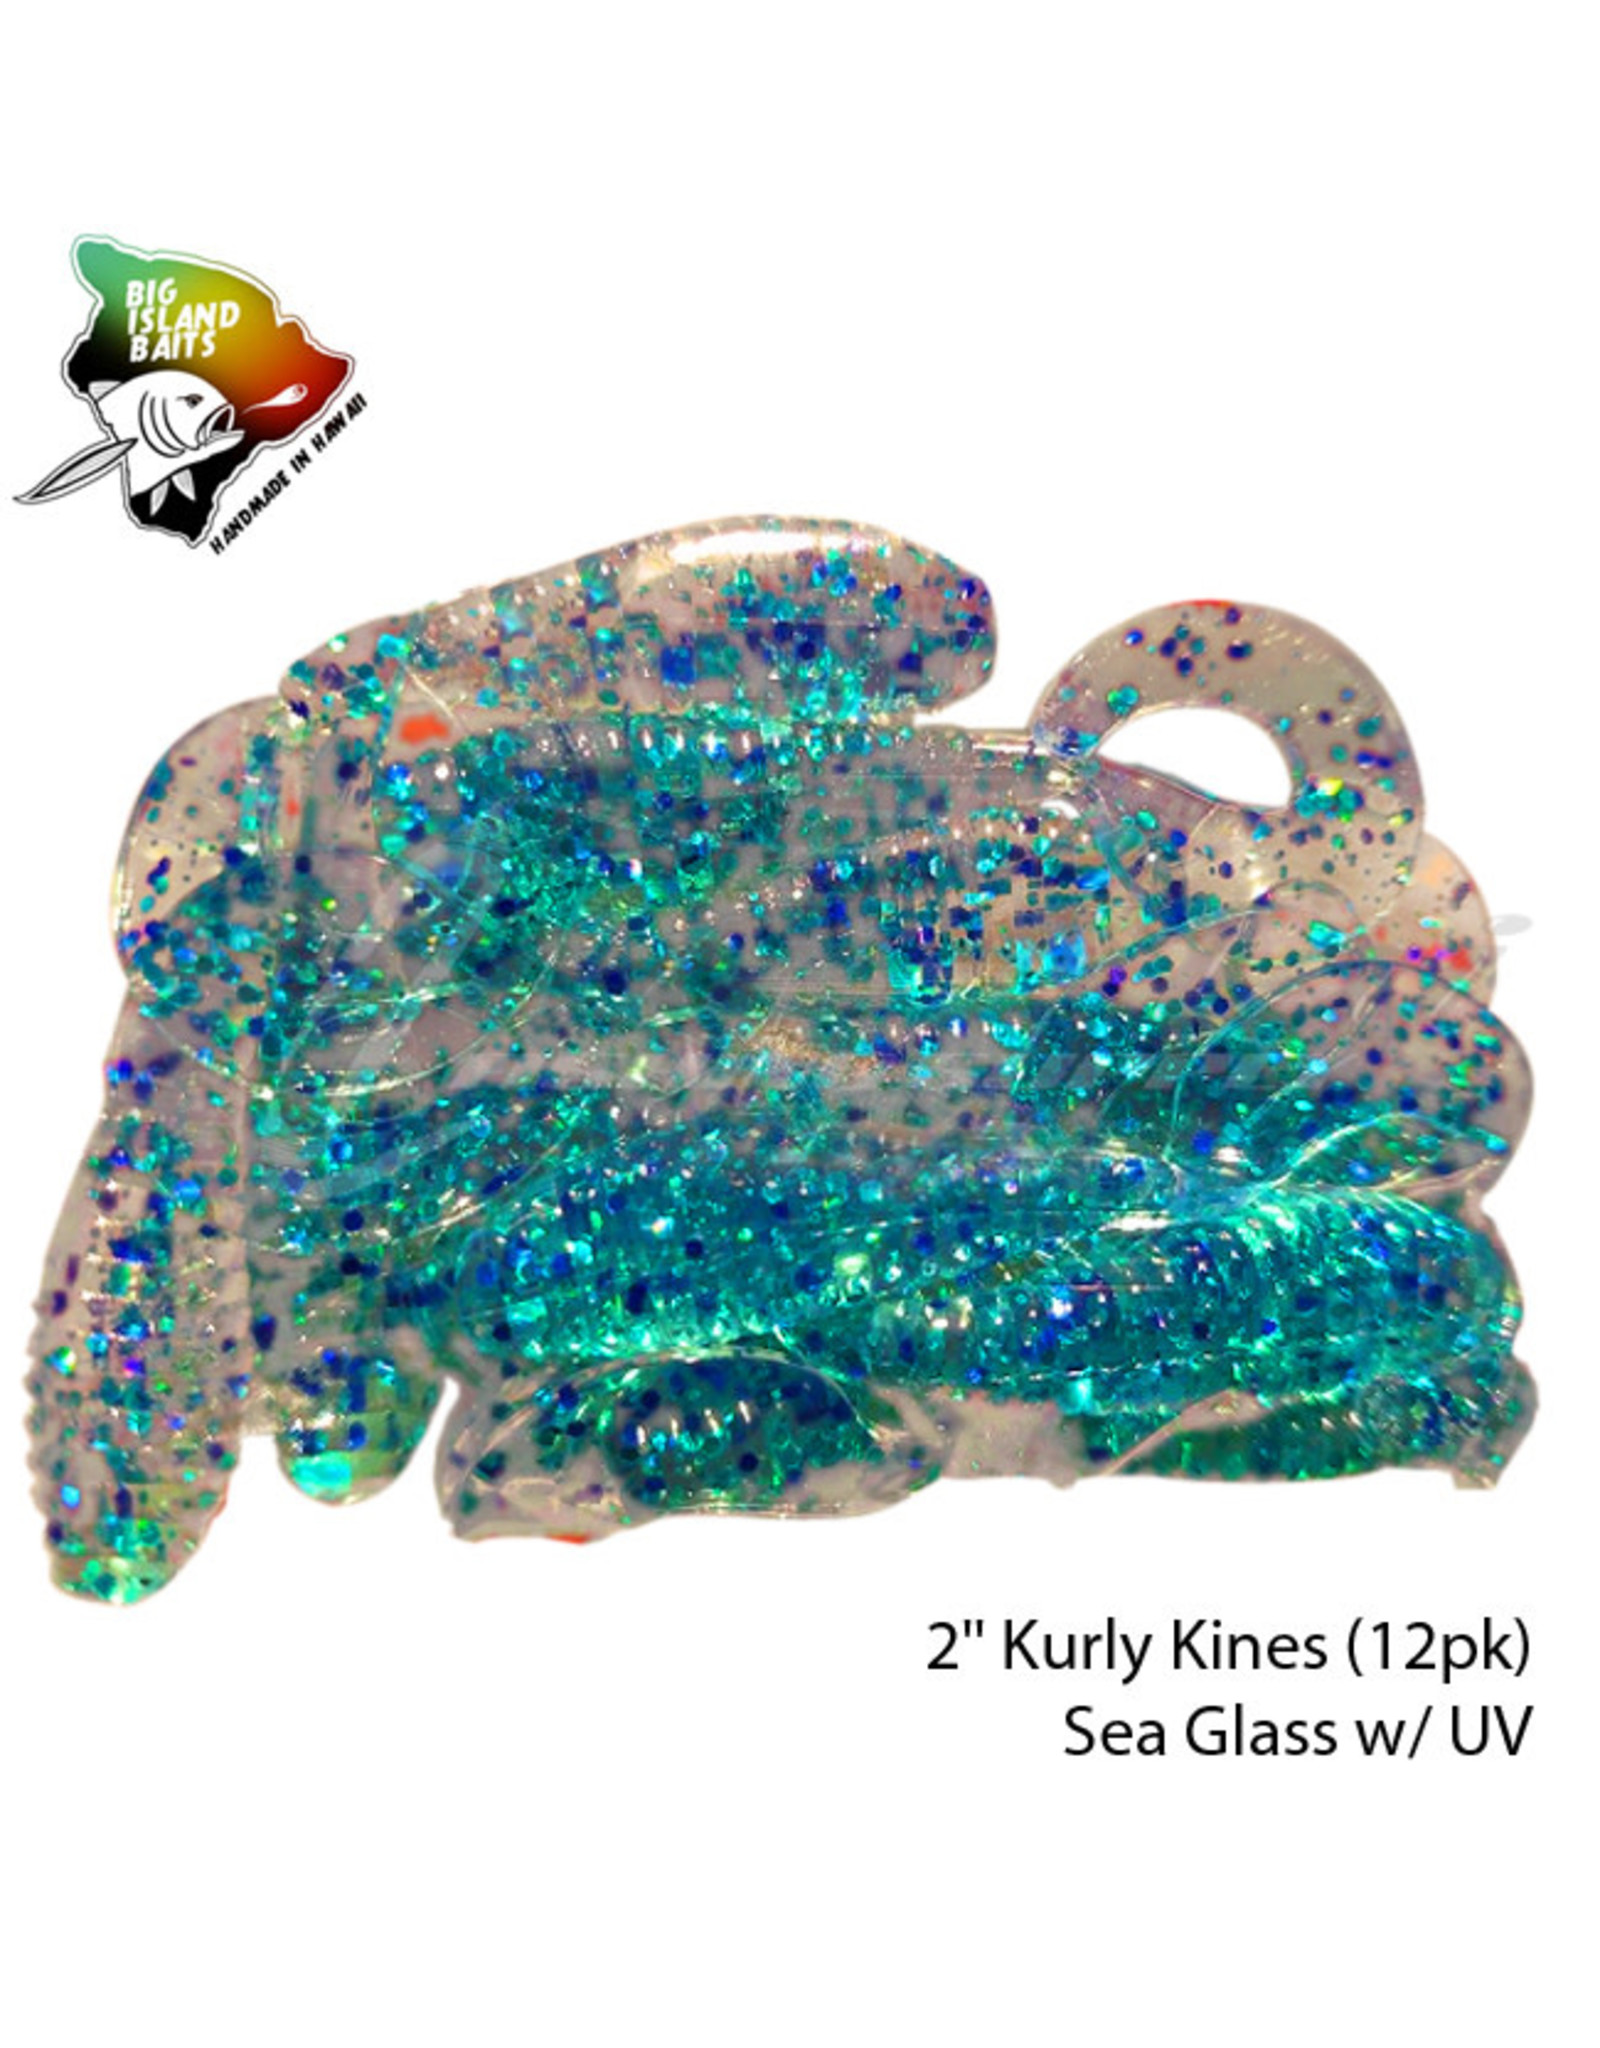 BIG ISLAND BAITS 2" Kurly Kines Sea Glass w/ UV (12pk)